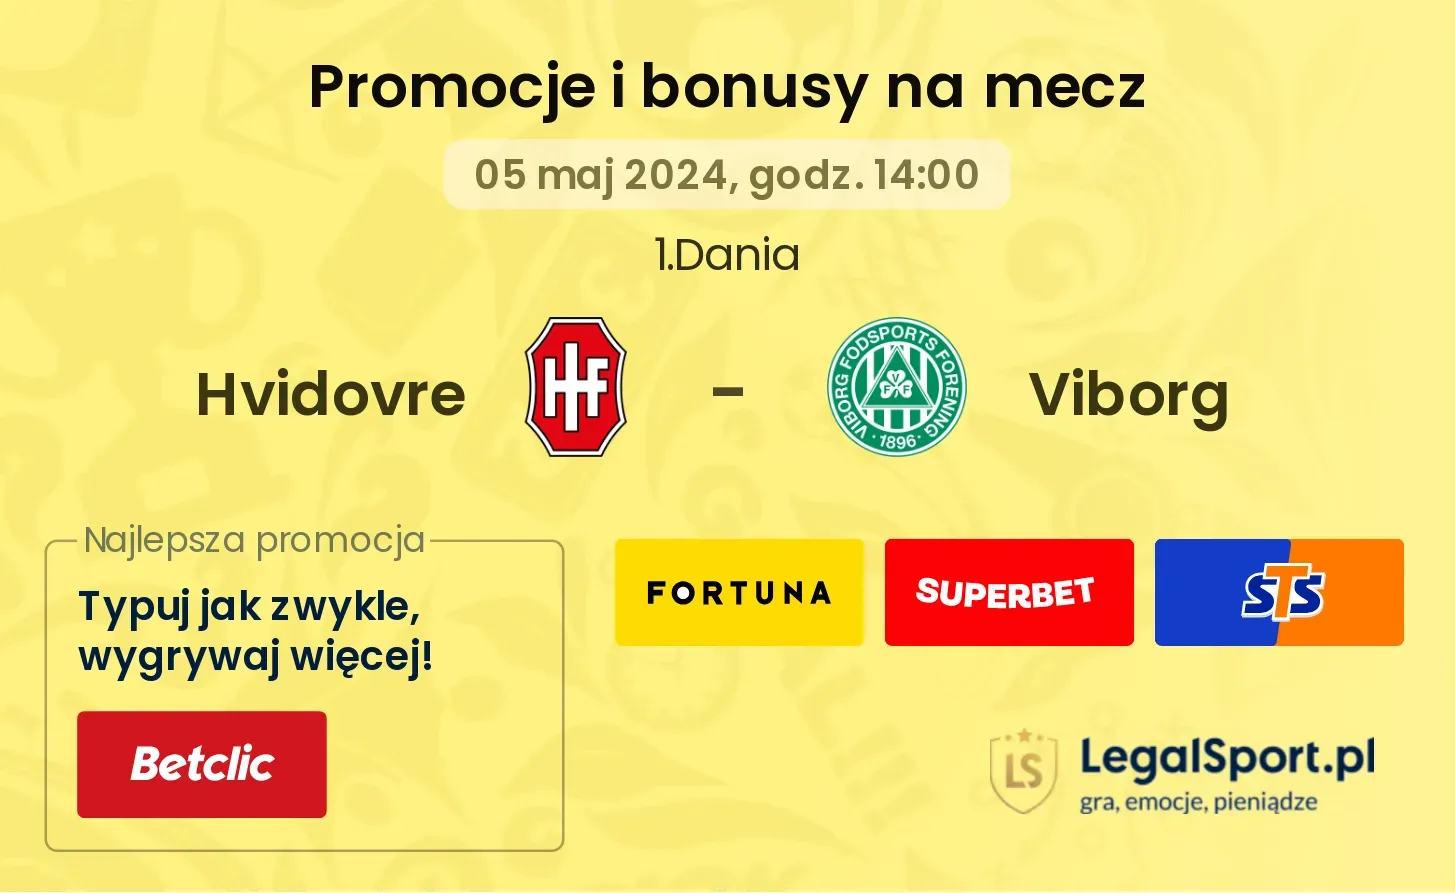 Hvidovre - Viborg promocje bonusy na mecz